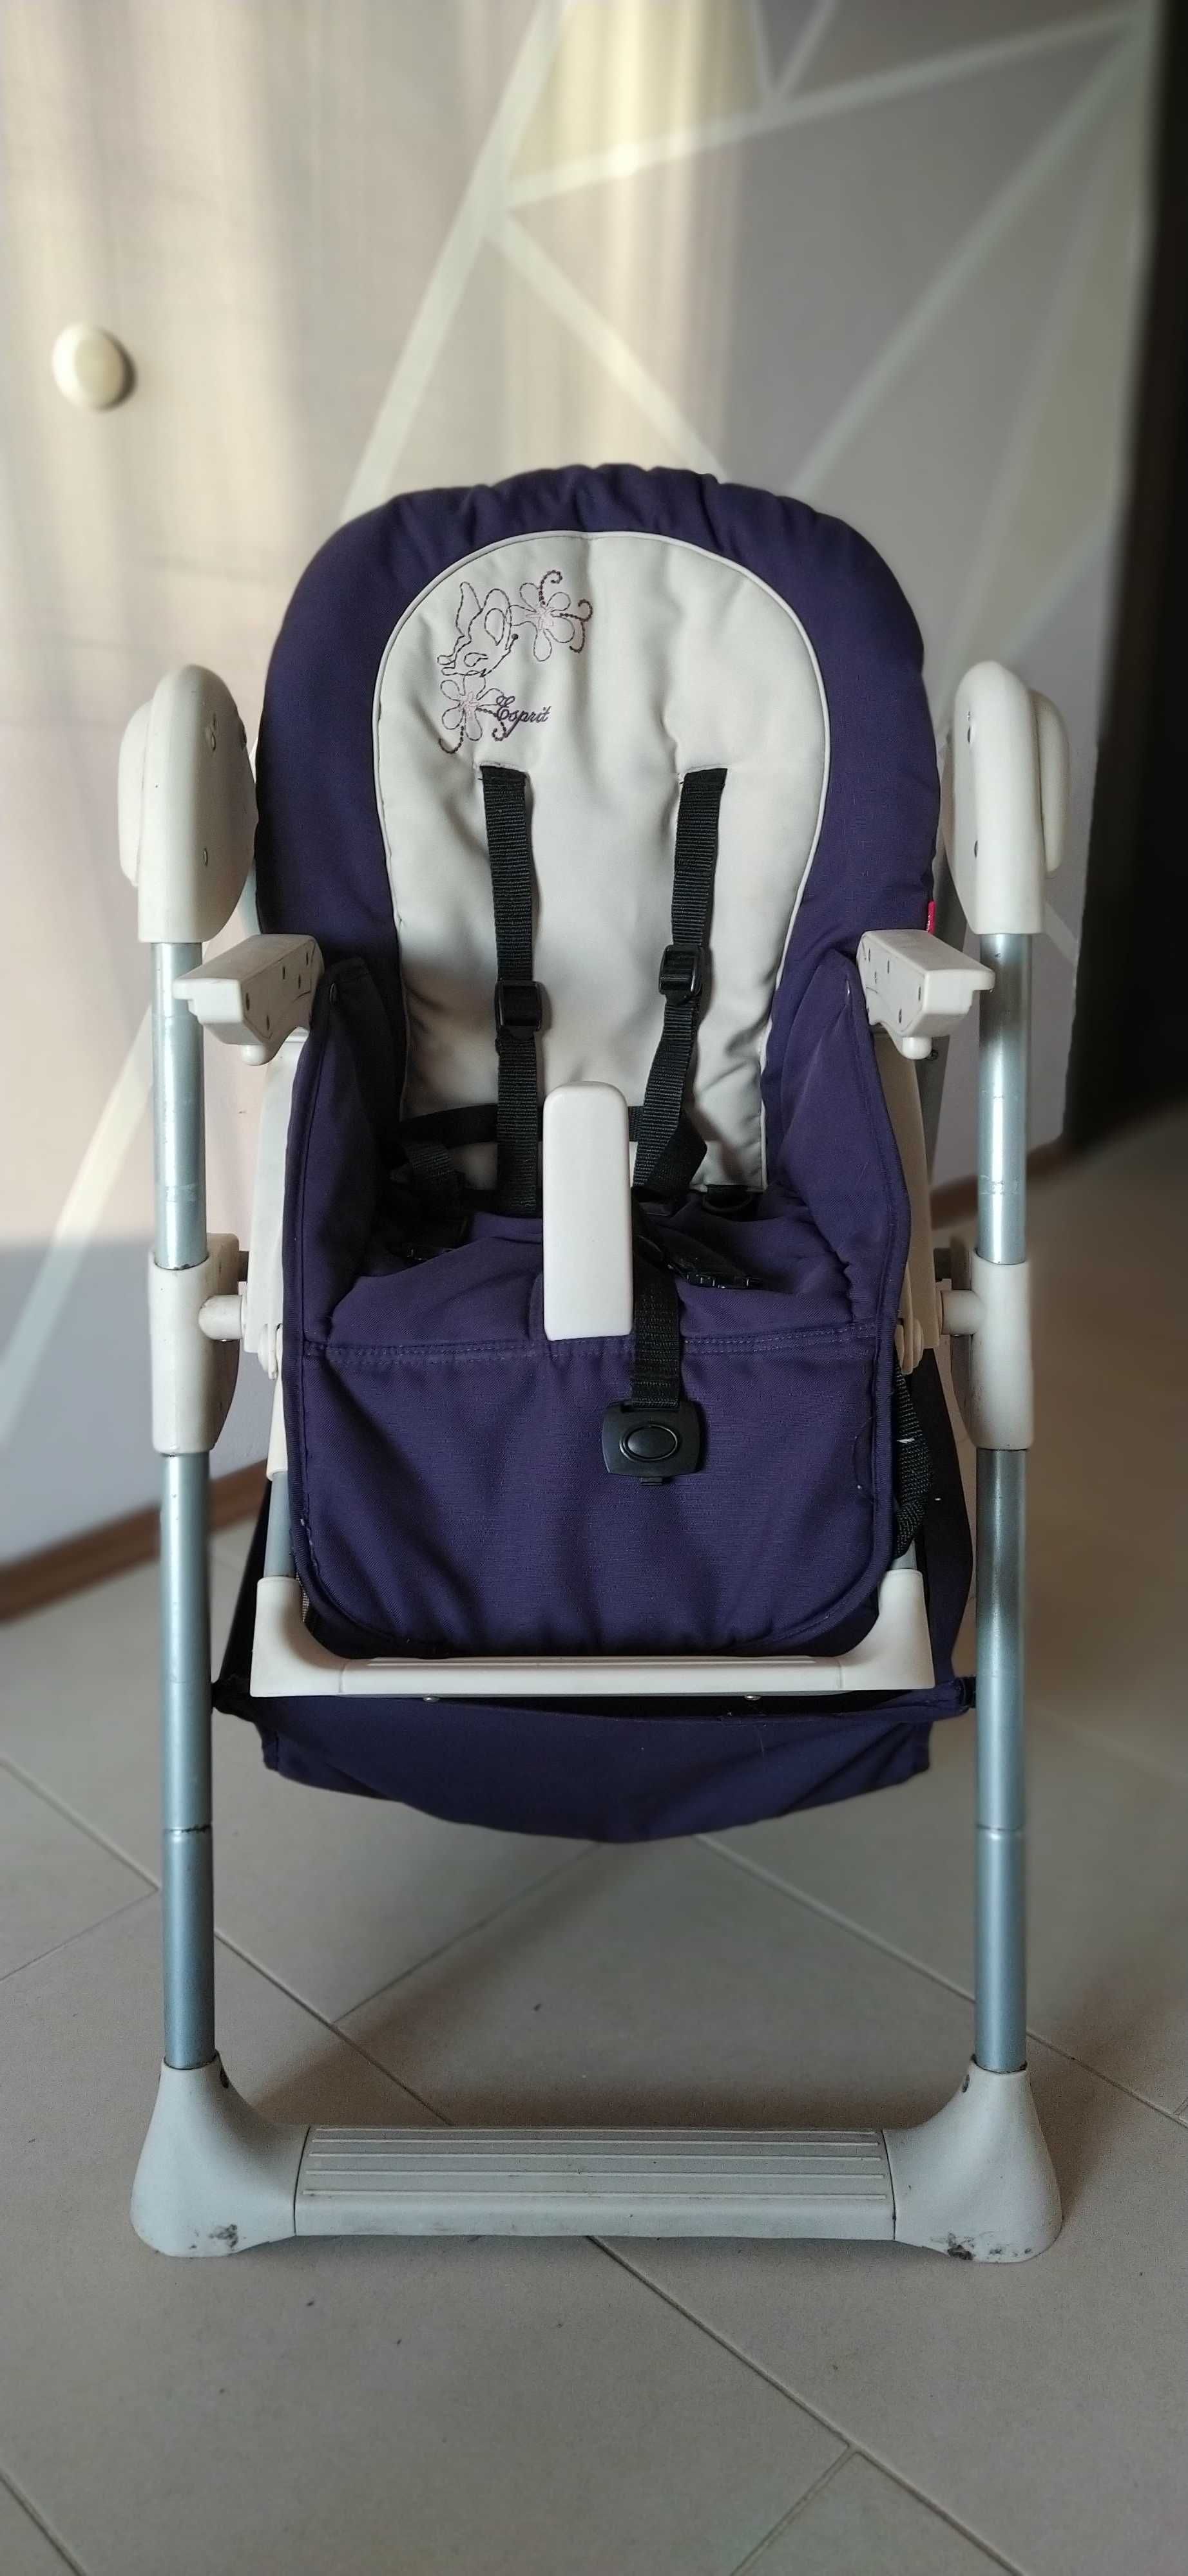 Детско столче с табла за хранене и кош за принадлежности Esprit